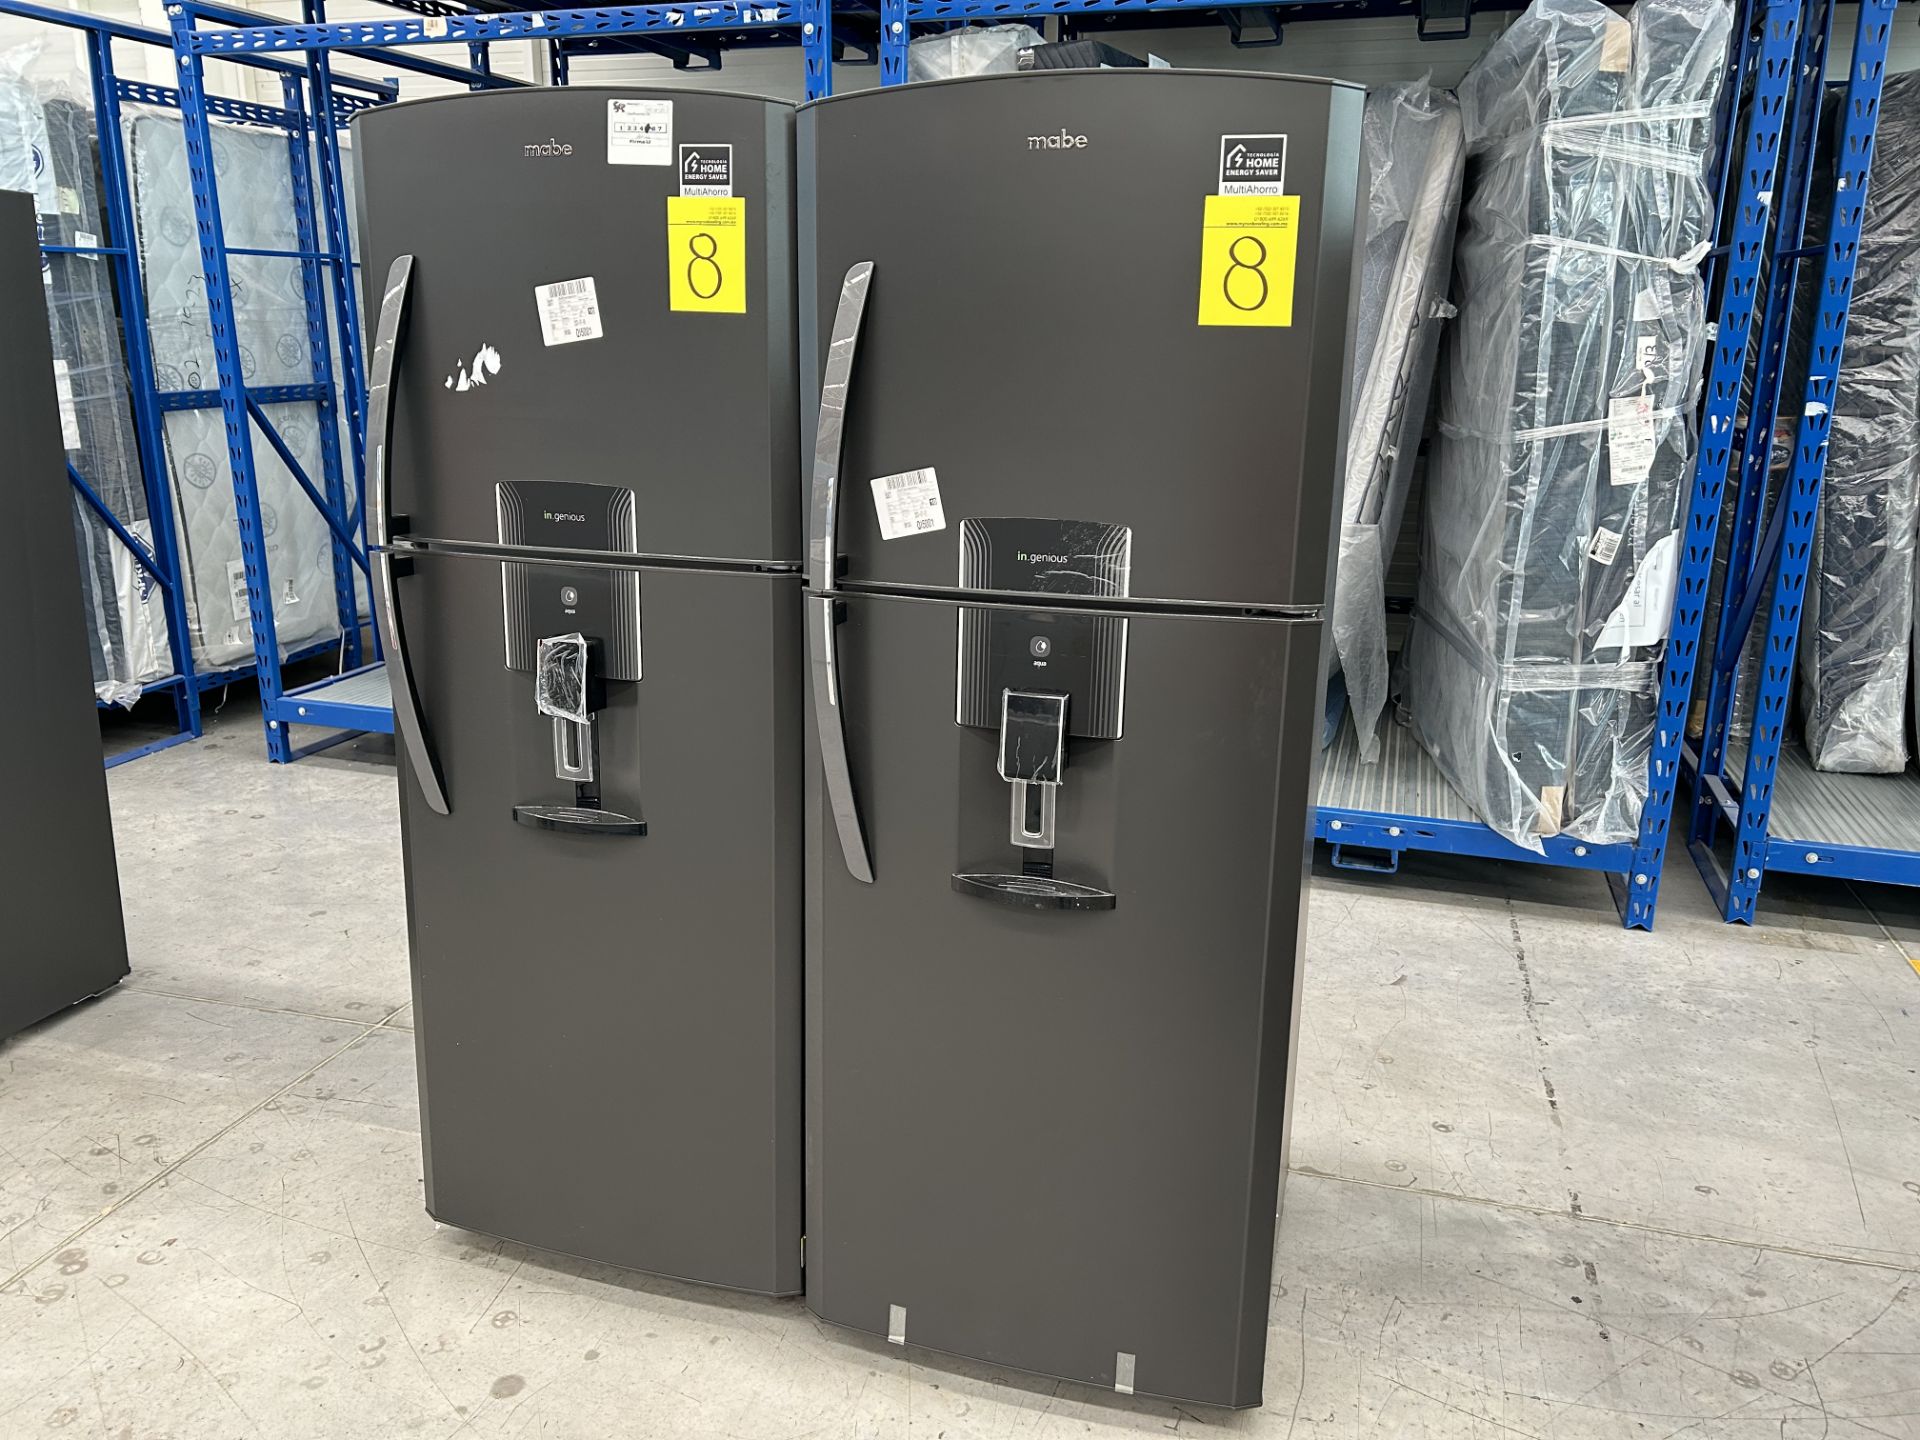 Lote de 2 Refrigeradores contiene: 1 Refrigerador con dispensador de agua Marca MABE, Modelo RME360 - Image 2 of 6